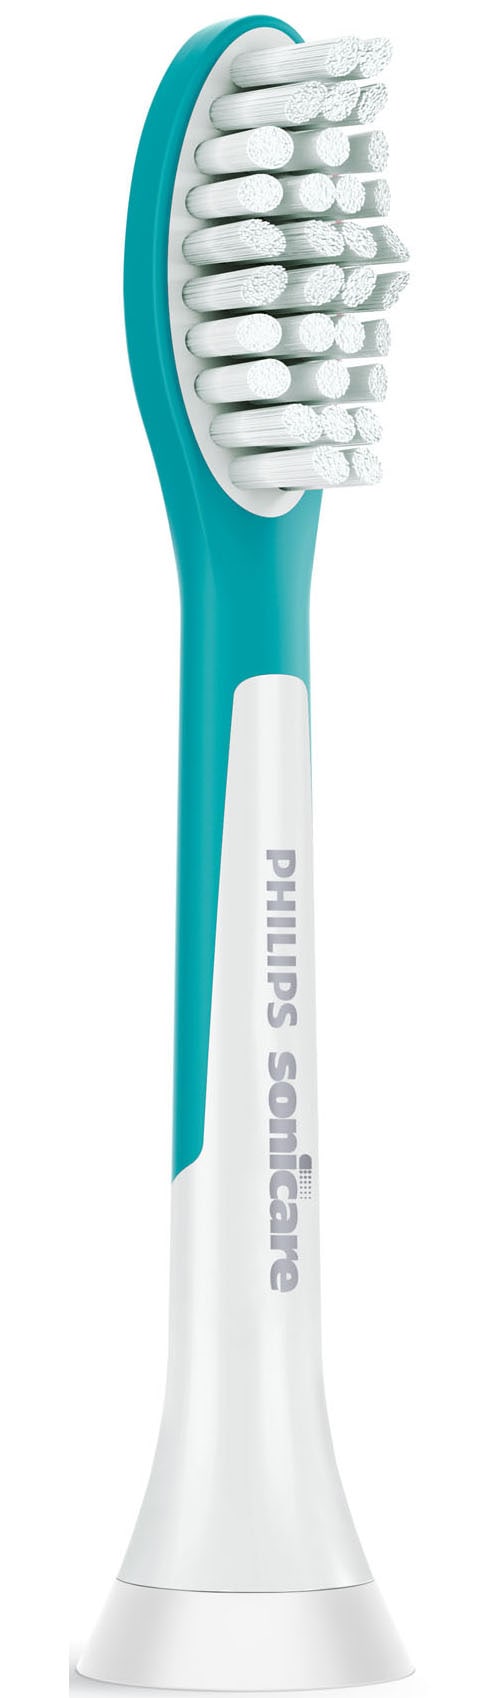 Philips Sonicare Aufsteckbürsten »Standard-Bürstenköpfe for Kids HX6042/33«, mit Schalltechnologie, kompatibel mit allen Sonicare-Zahnbürsten